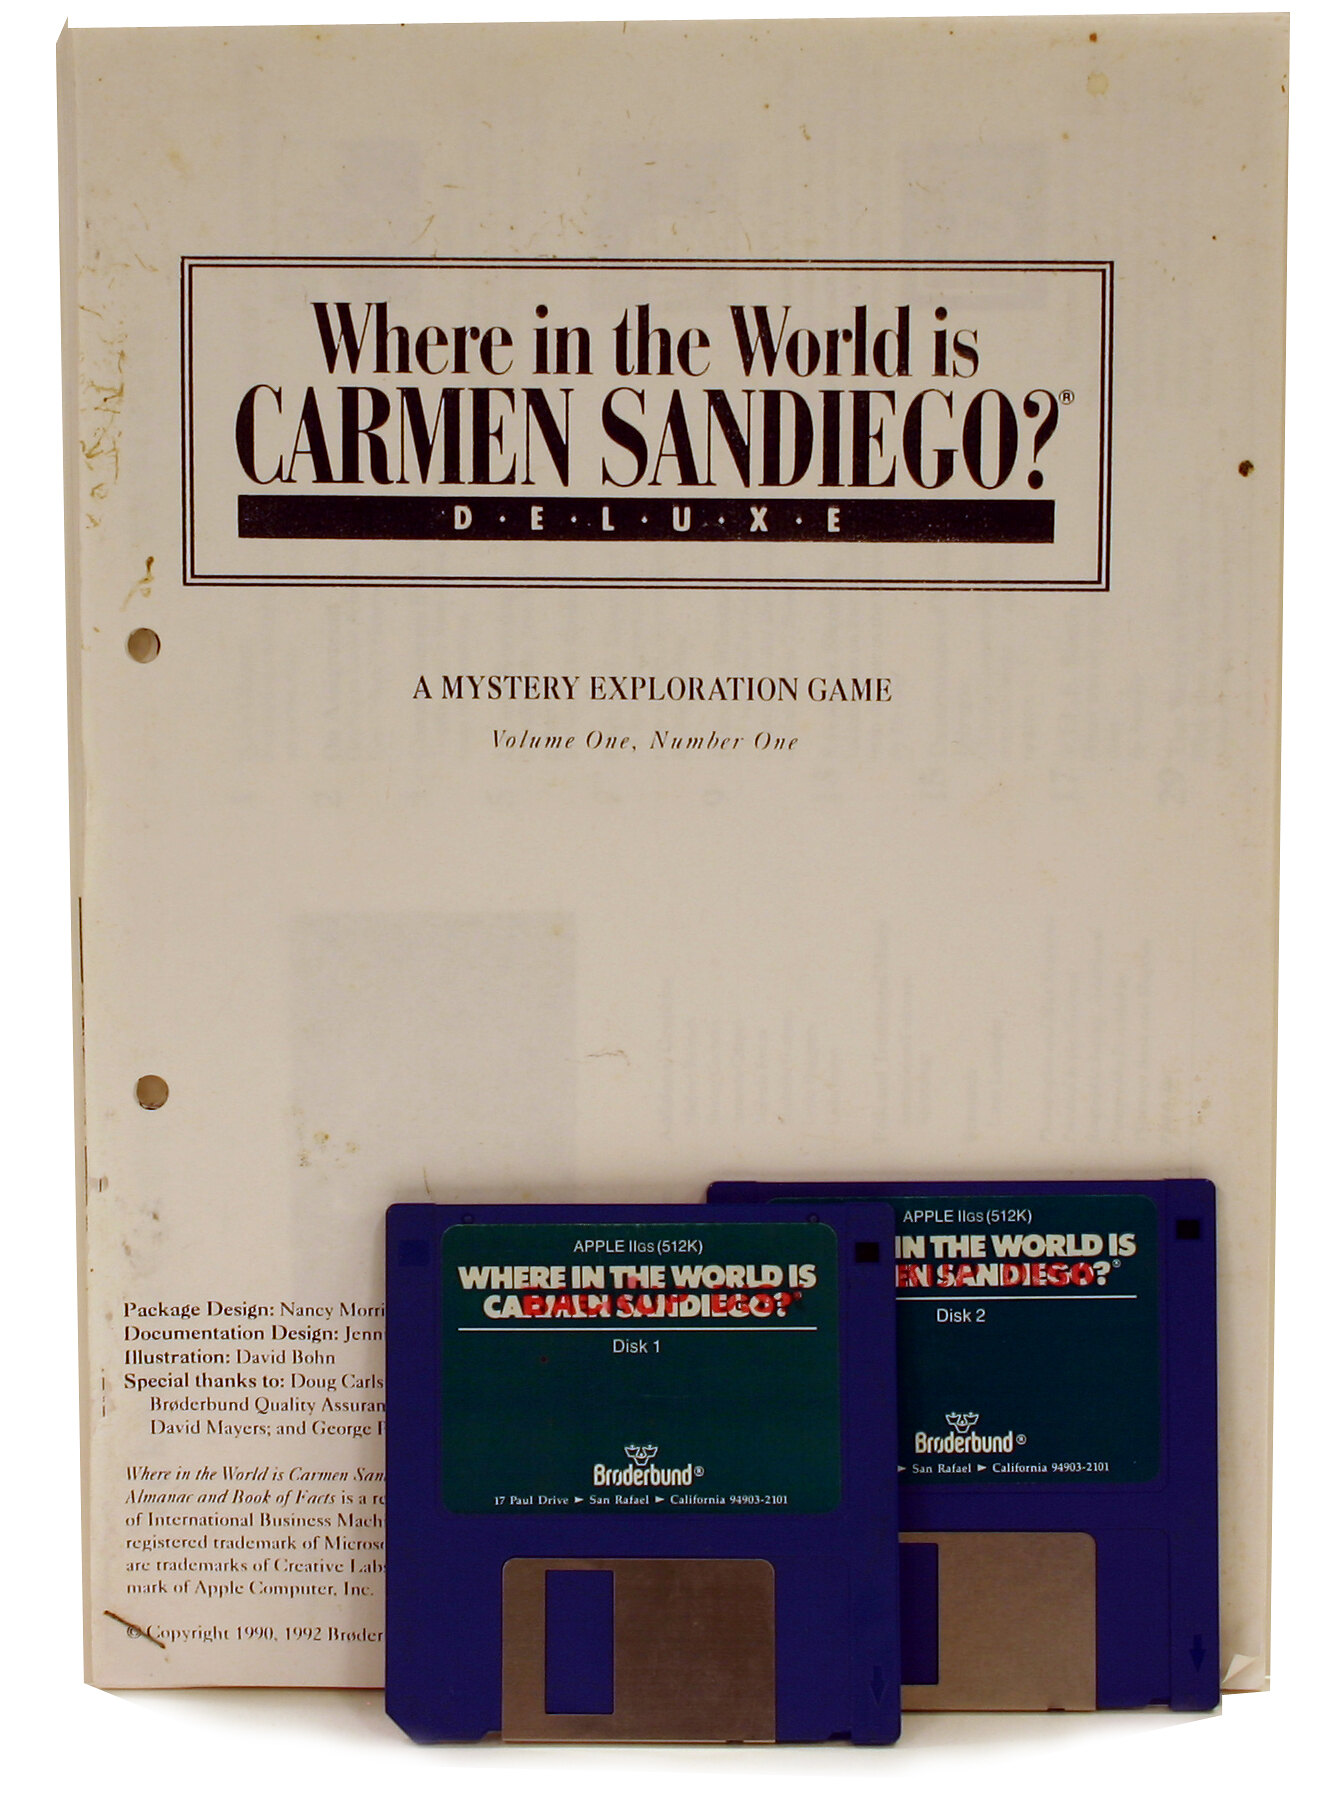 Where in Time is Carmen Sandiego (Broderbund)(1997) : Free